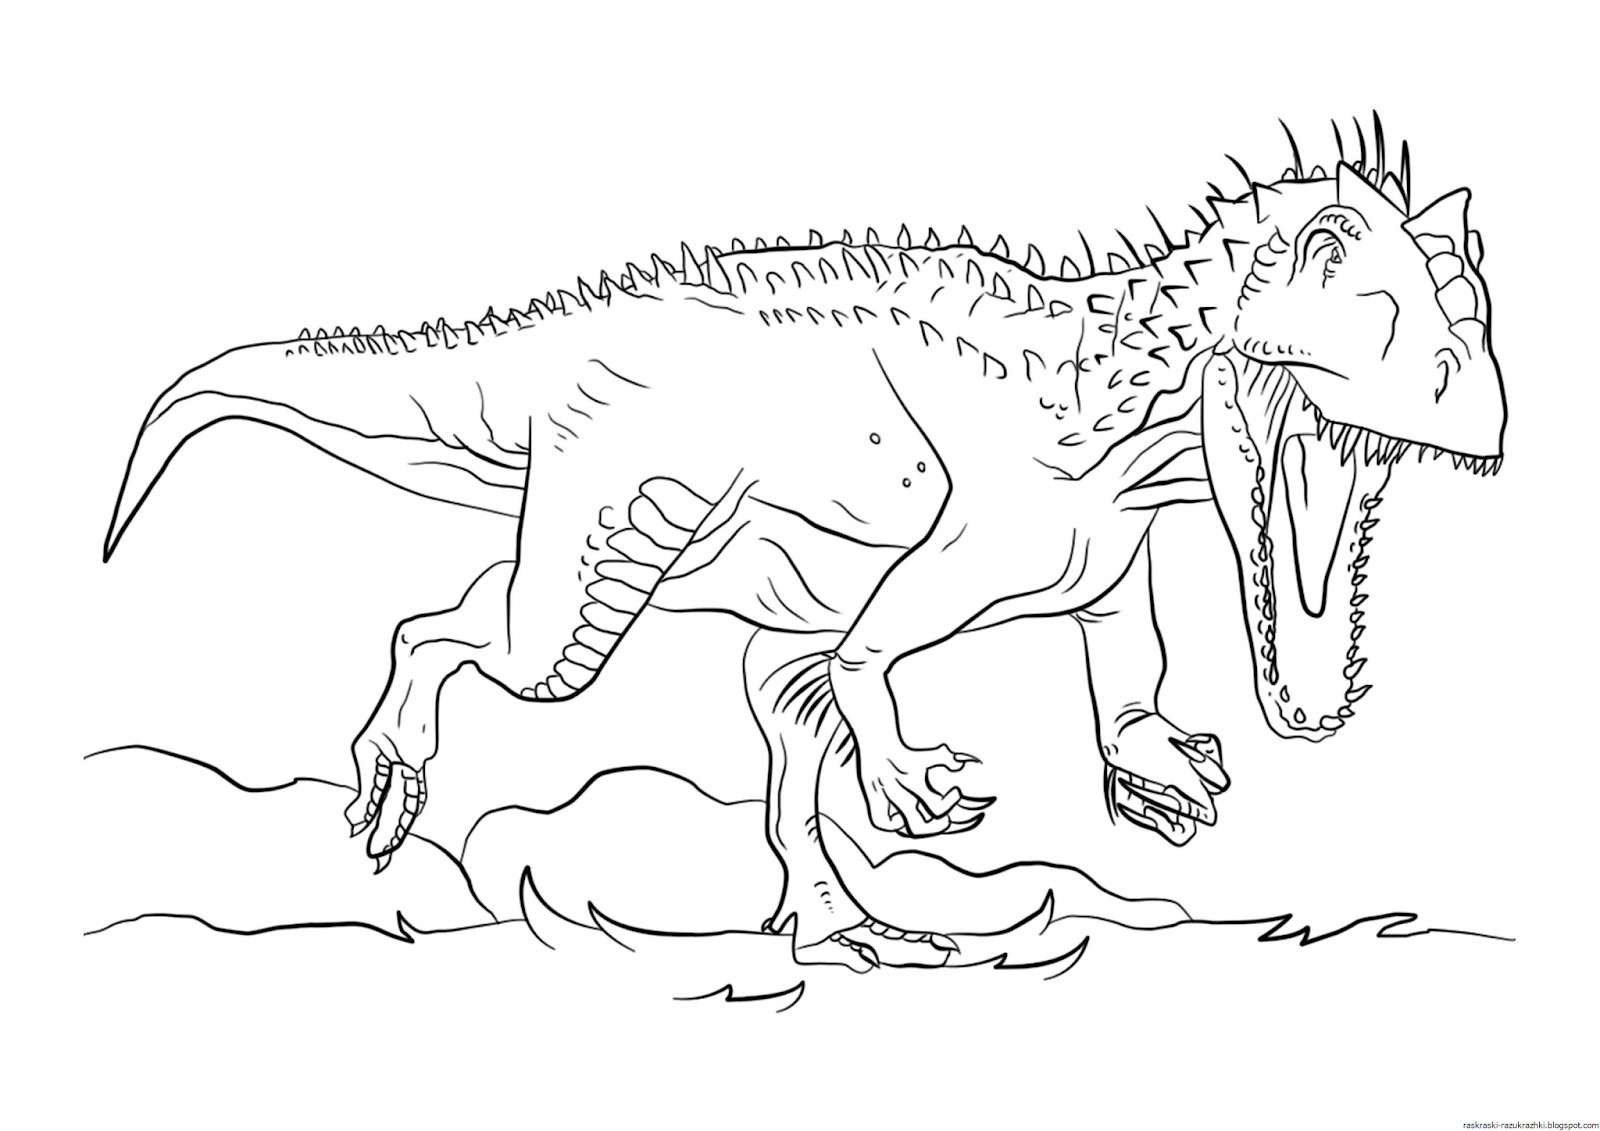 Динозавр раскраска распечатать а4. Раскраска динозавр Индоминус рекс. Раскраска мир Юрского периода Индоминус рекс. Tyrannosaurus Rex раскраска мир Юрского периода. Индоминус рекс для детей.